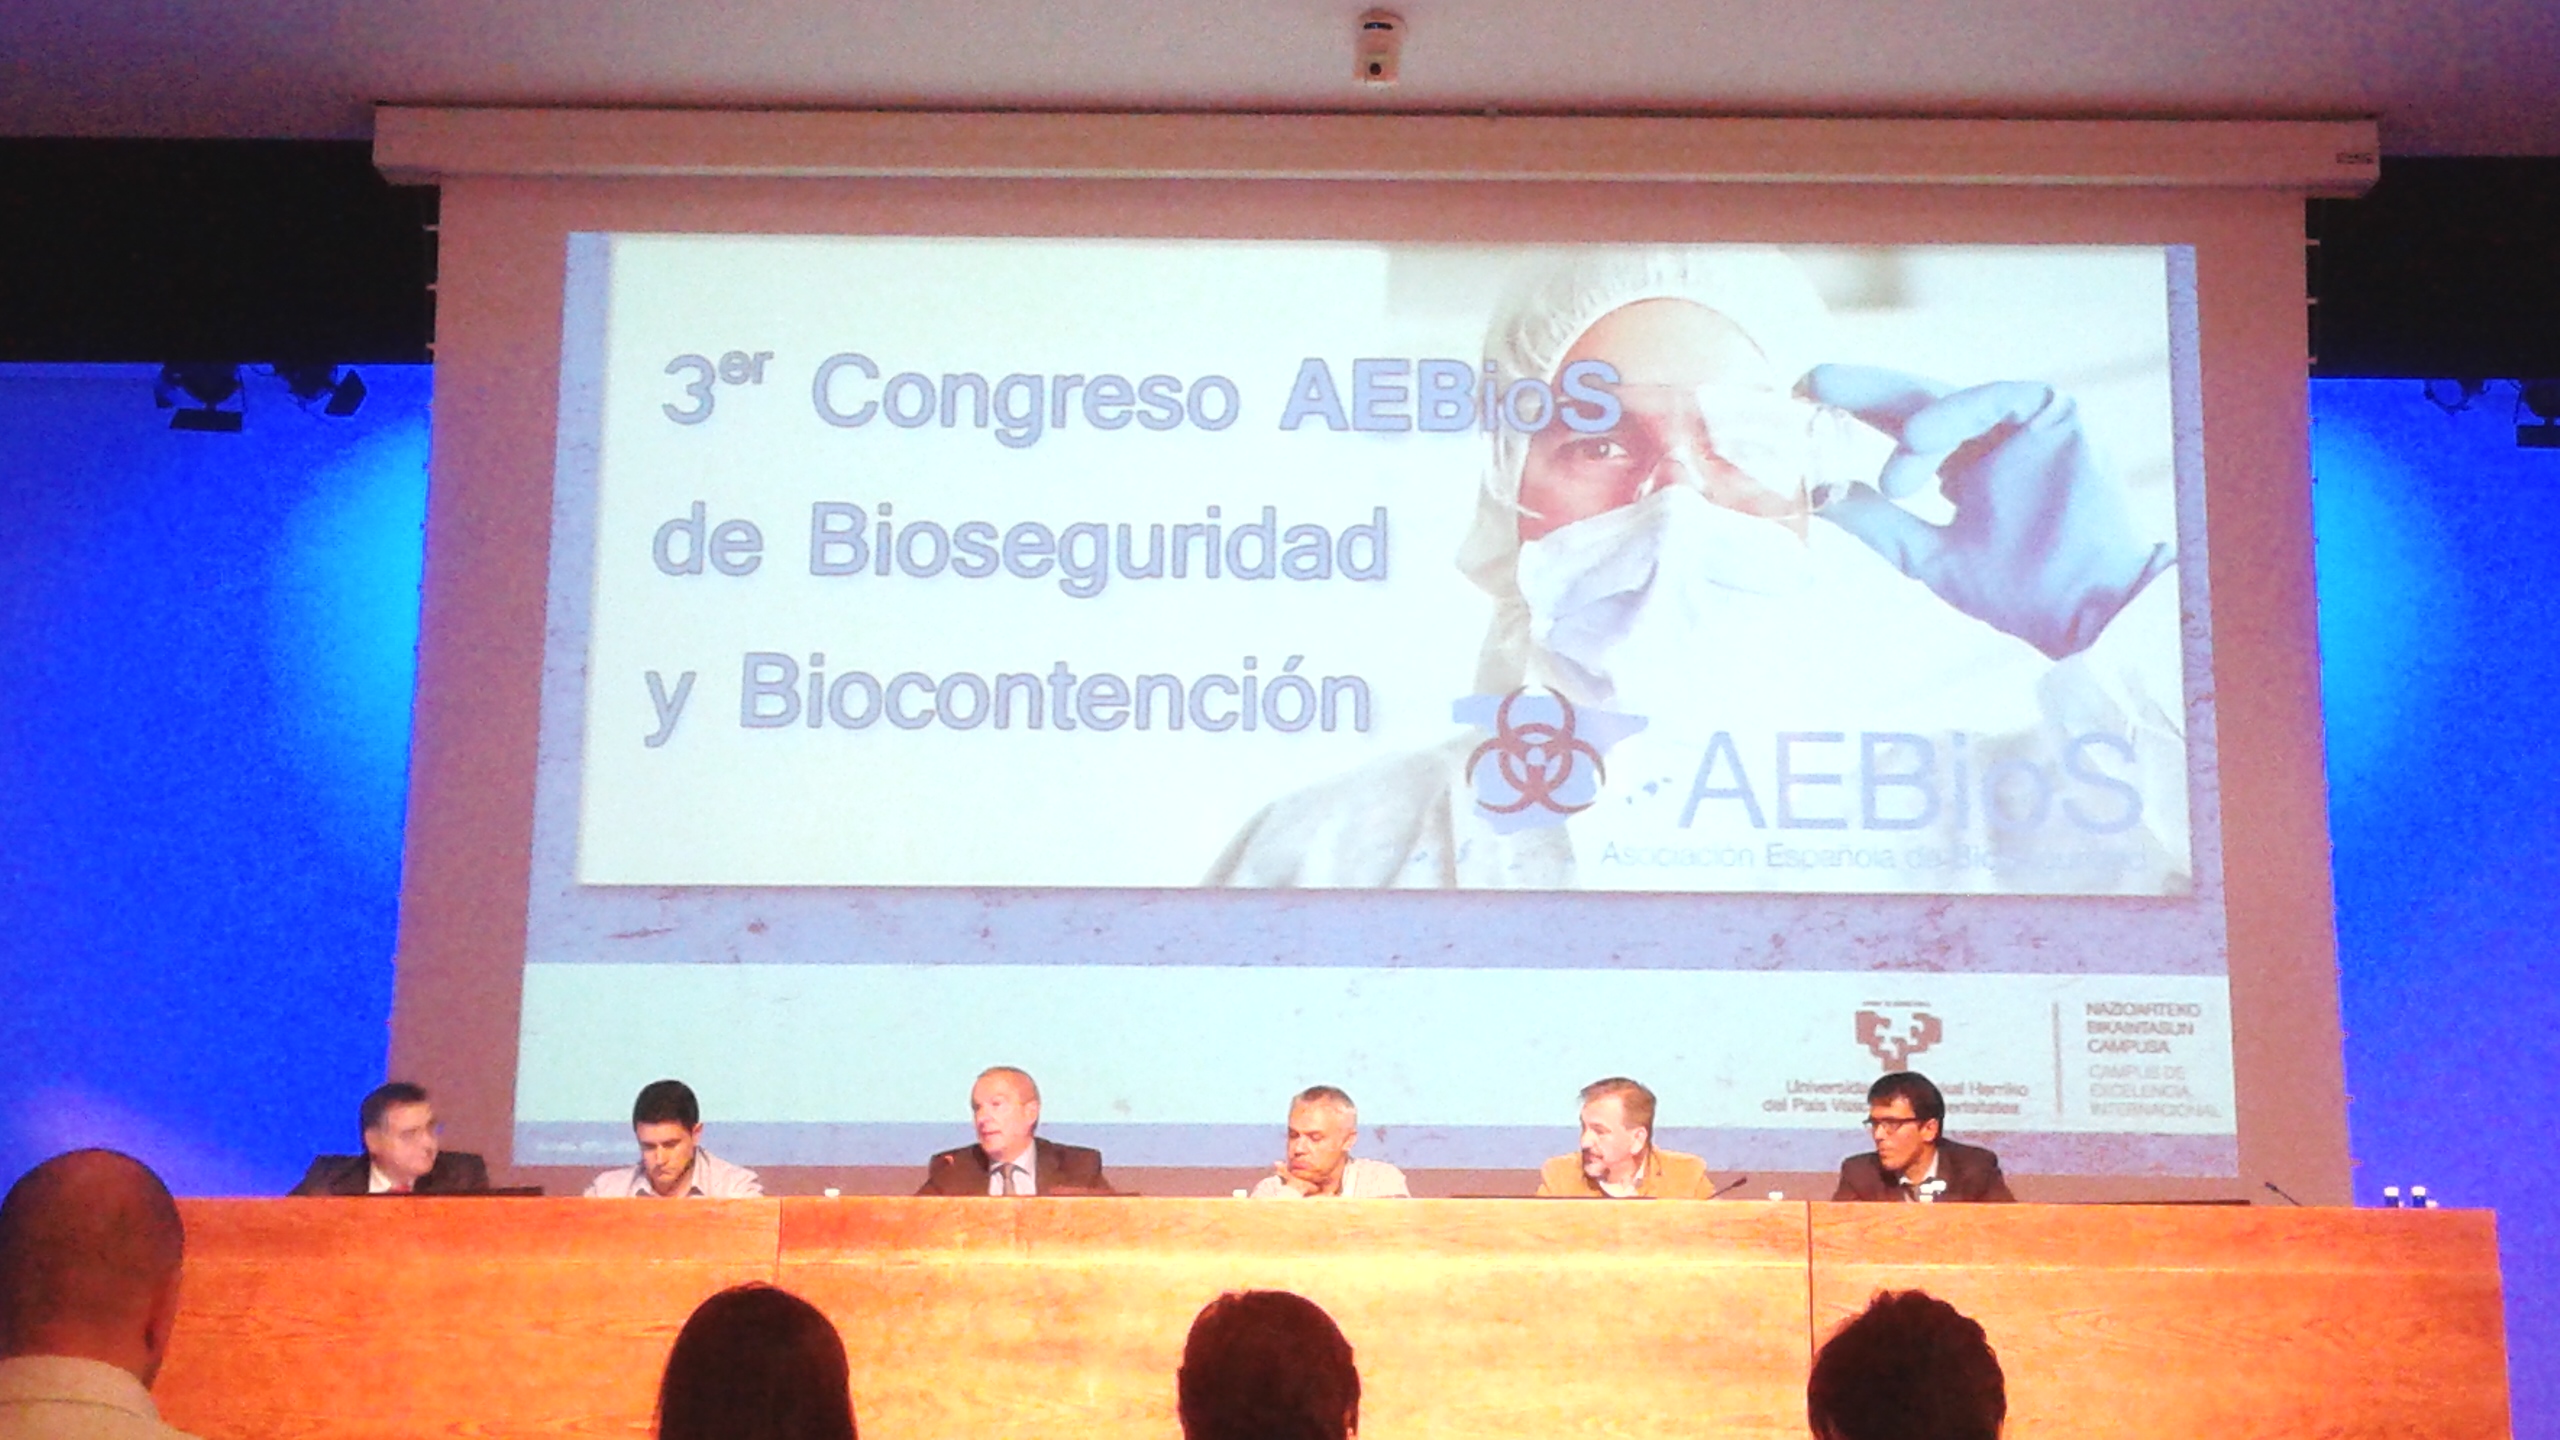 Se celebró en Bilbao el 3er Congreso AEBioS de Bioseguridad y Biocontención